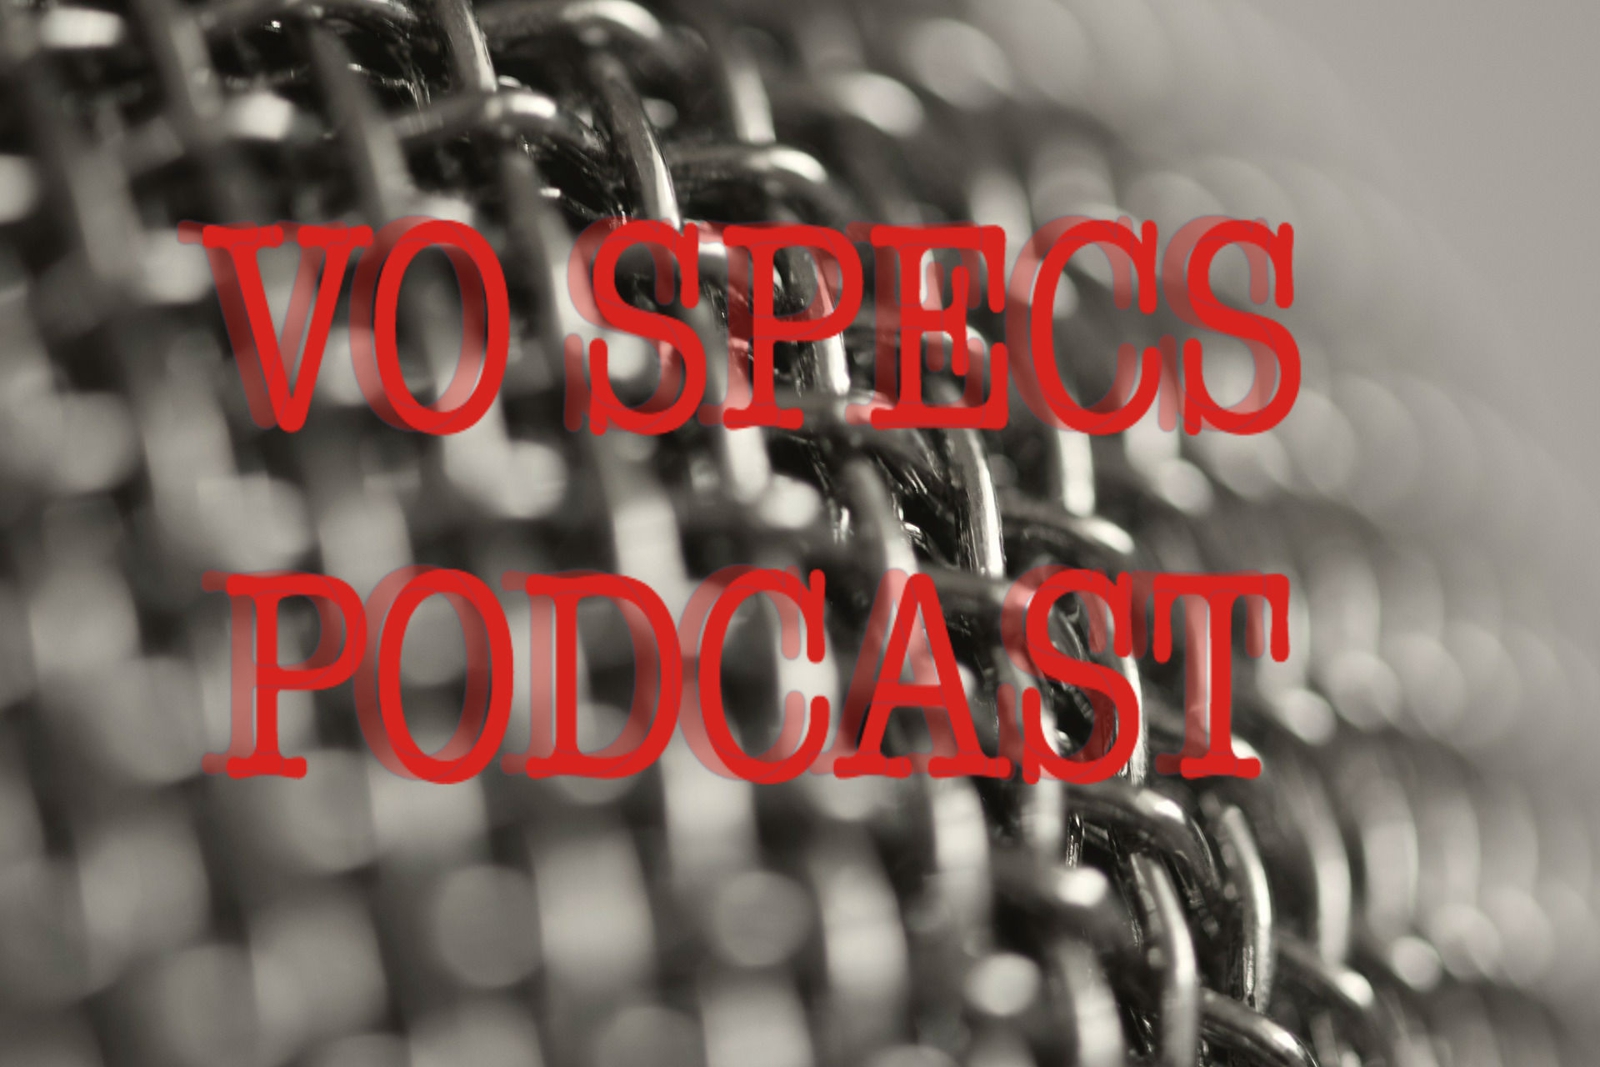 VO Specs Podcast - Episode 1